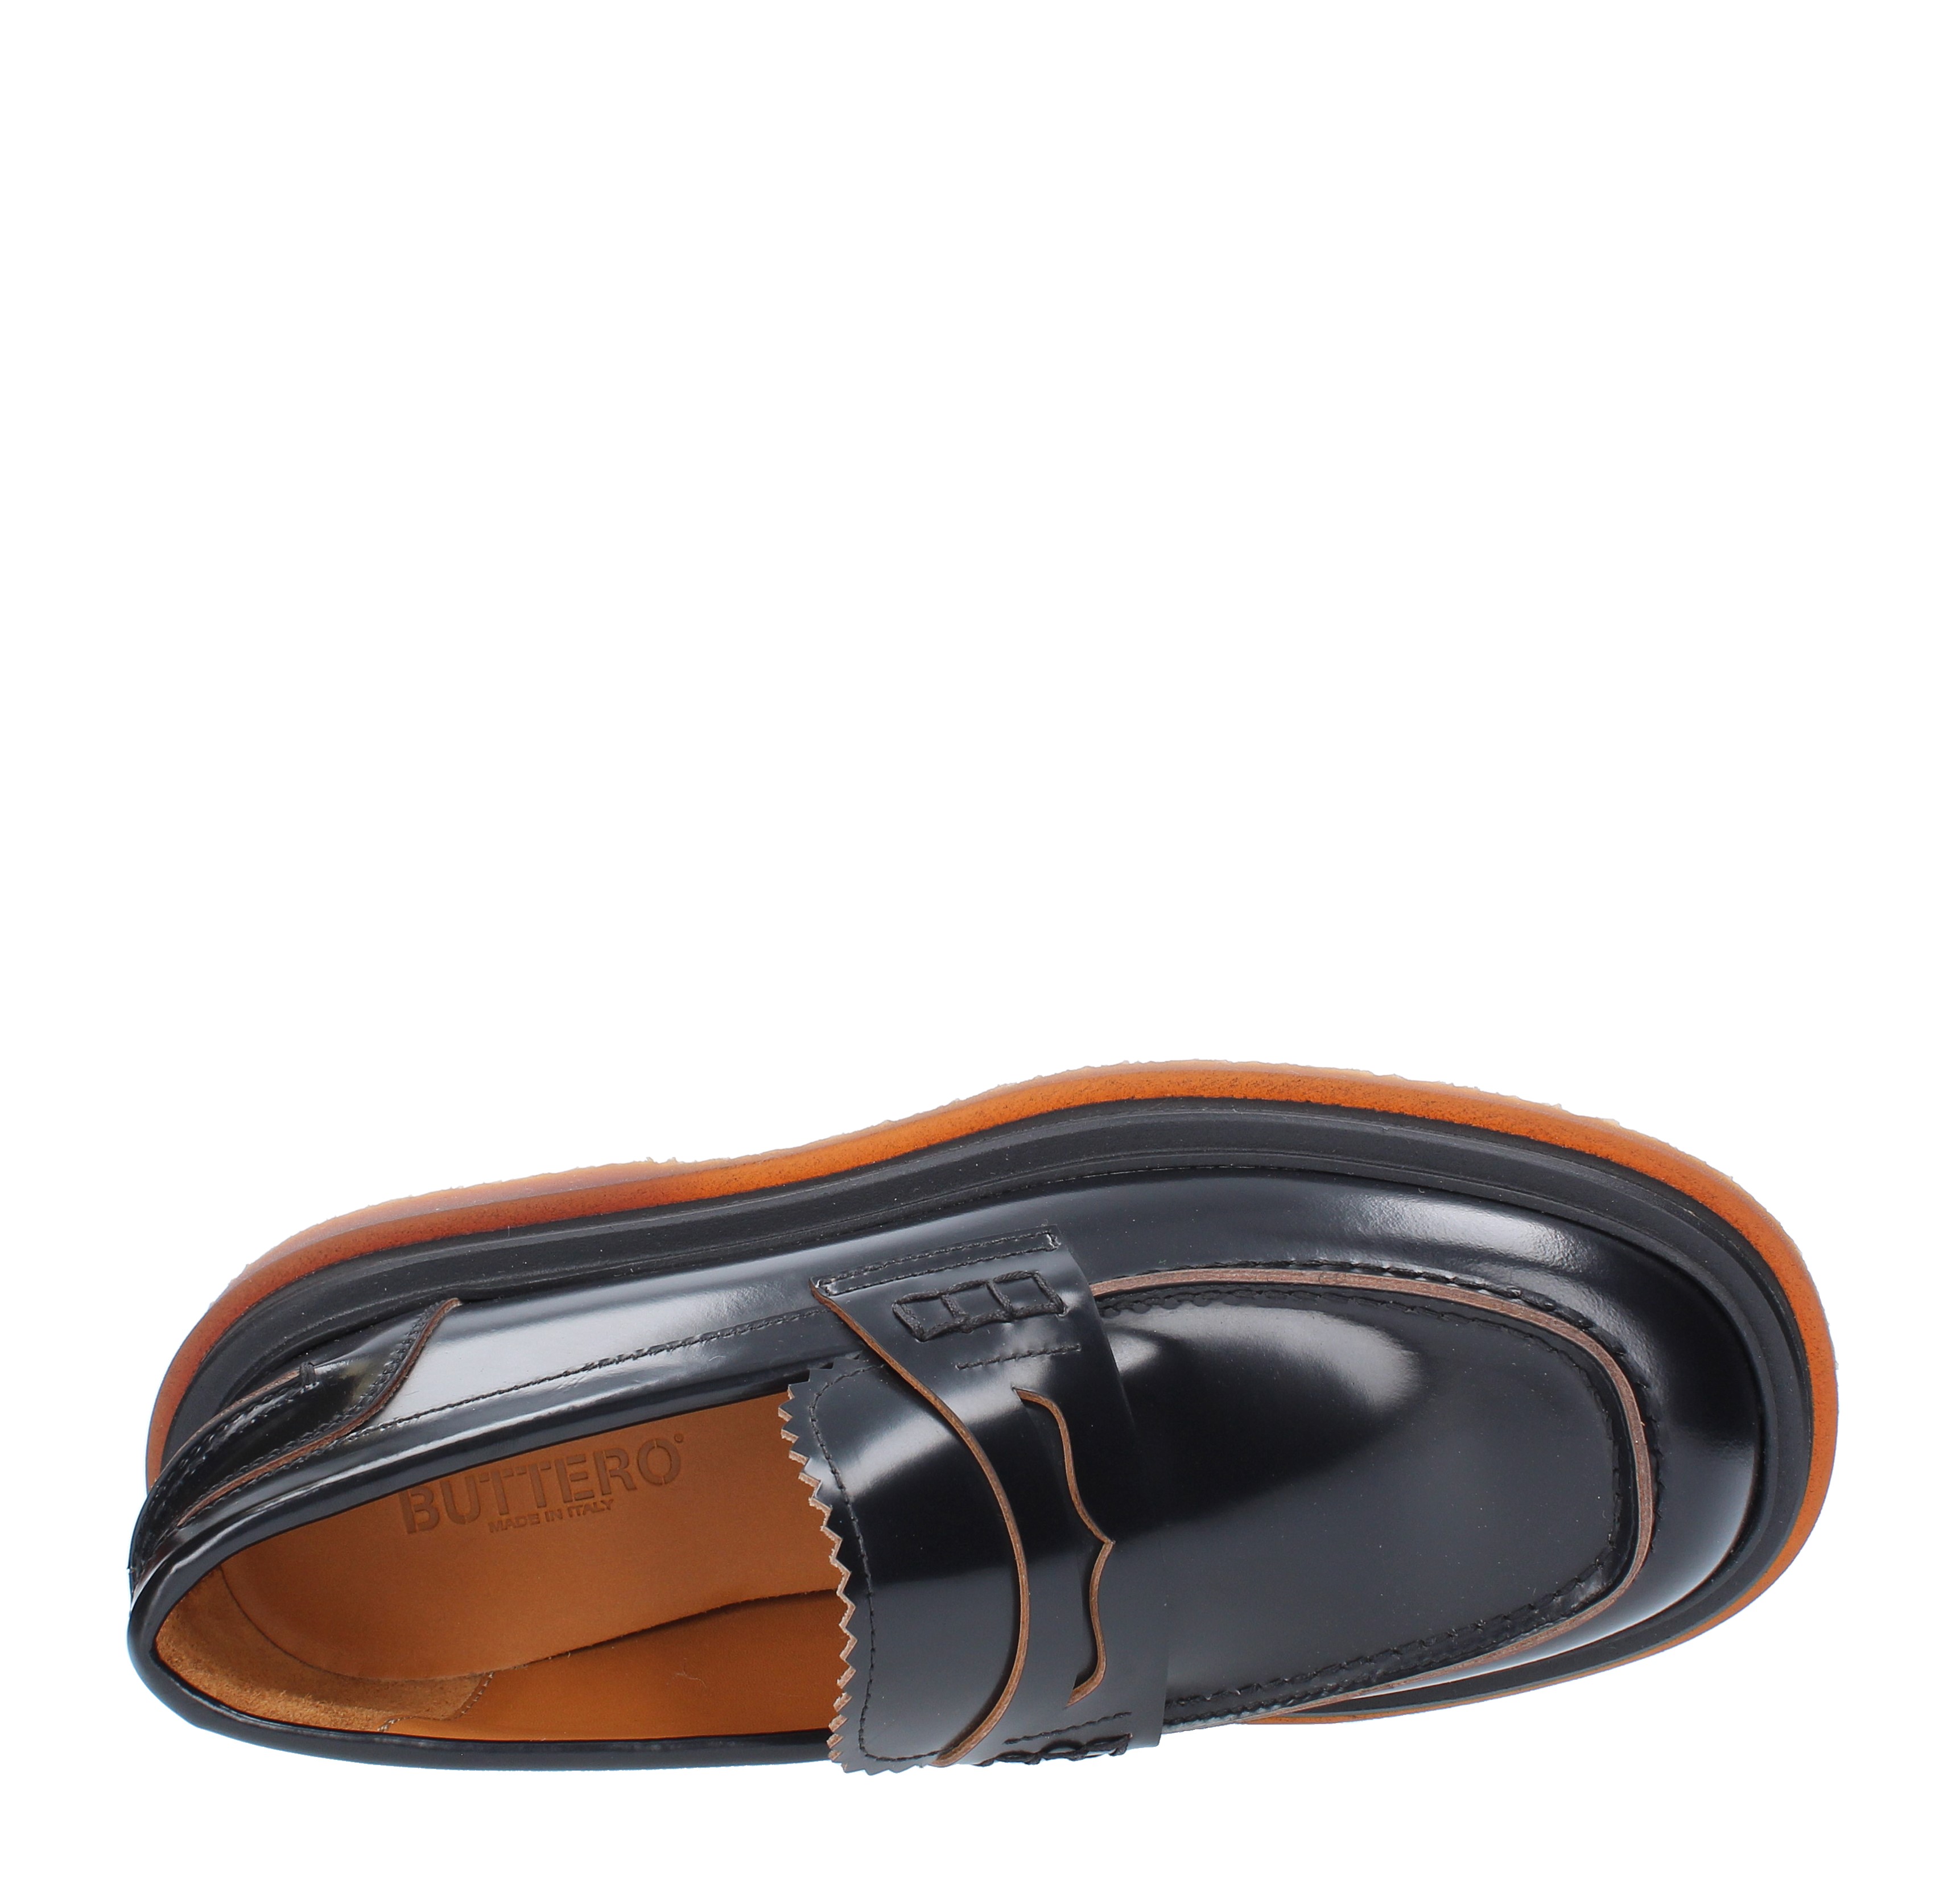 Mocassini modello B9431ROA in pelle lucida - BUTTERO - Ginevra calzature